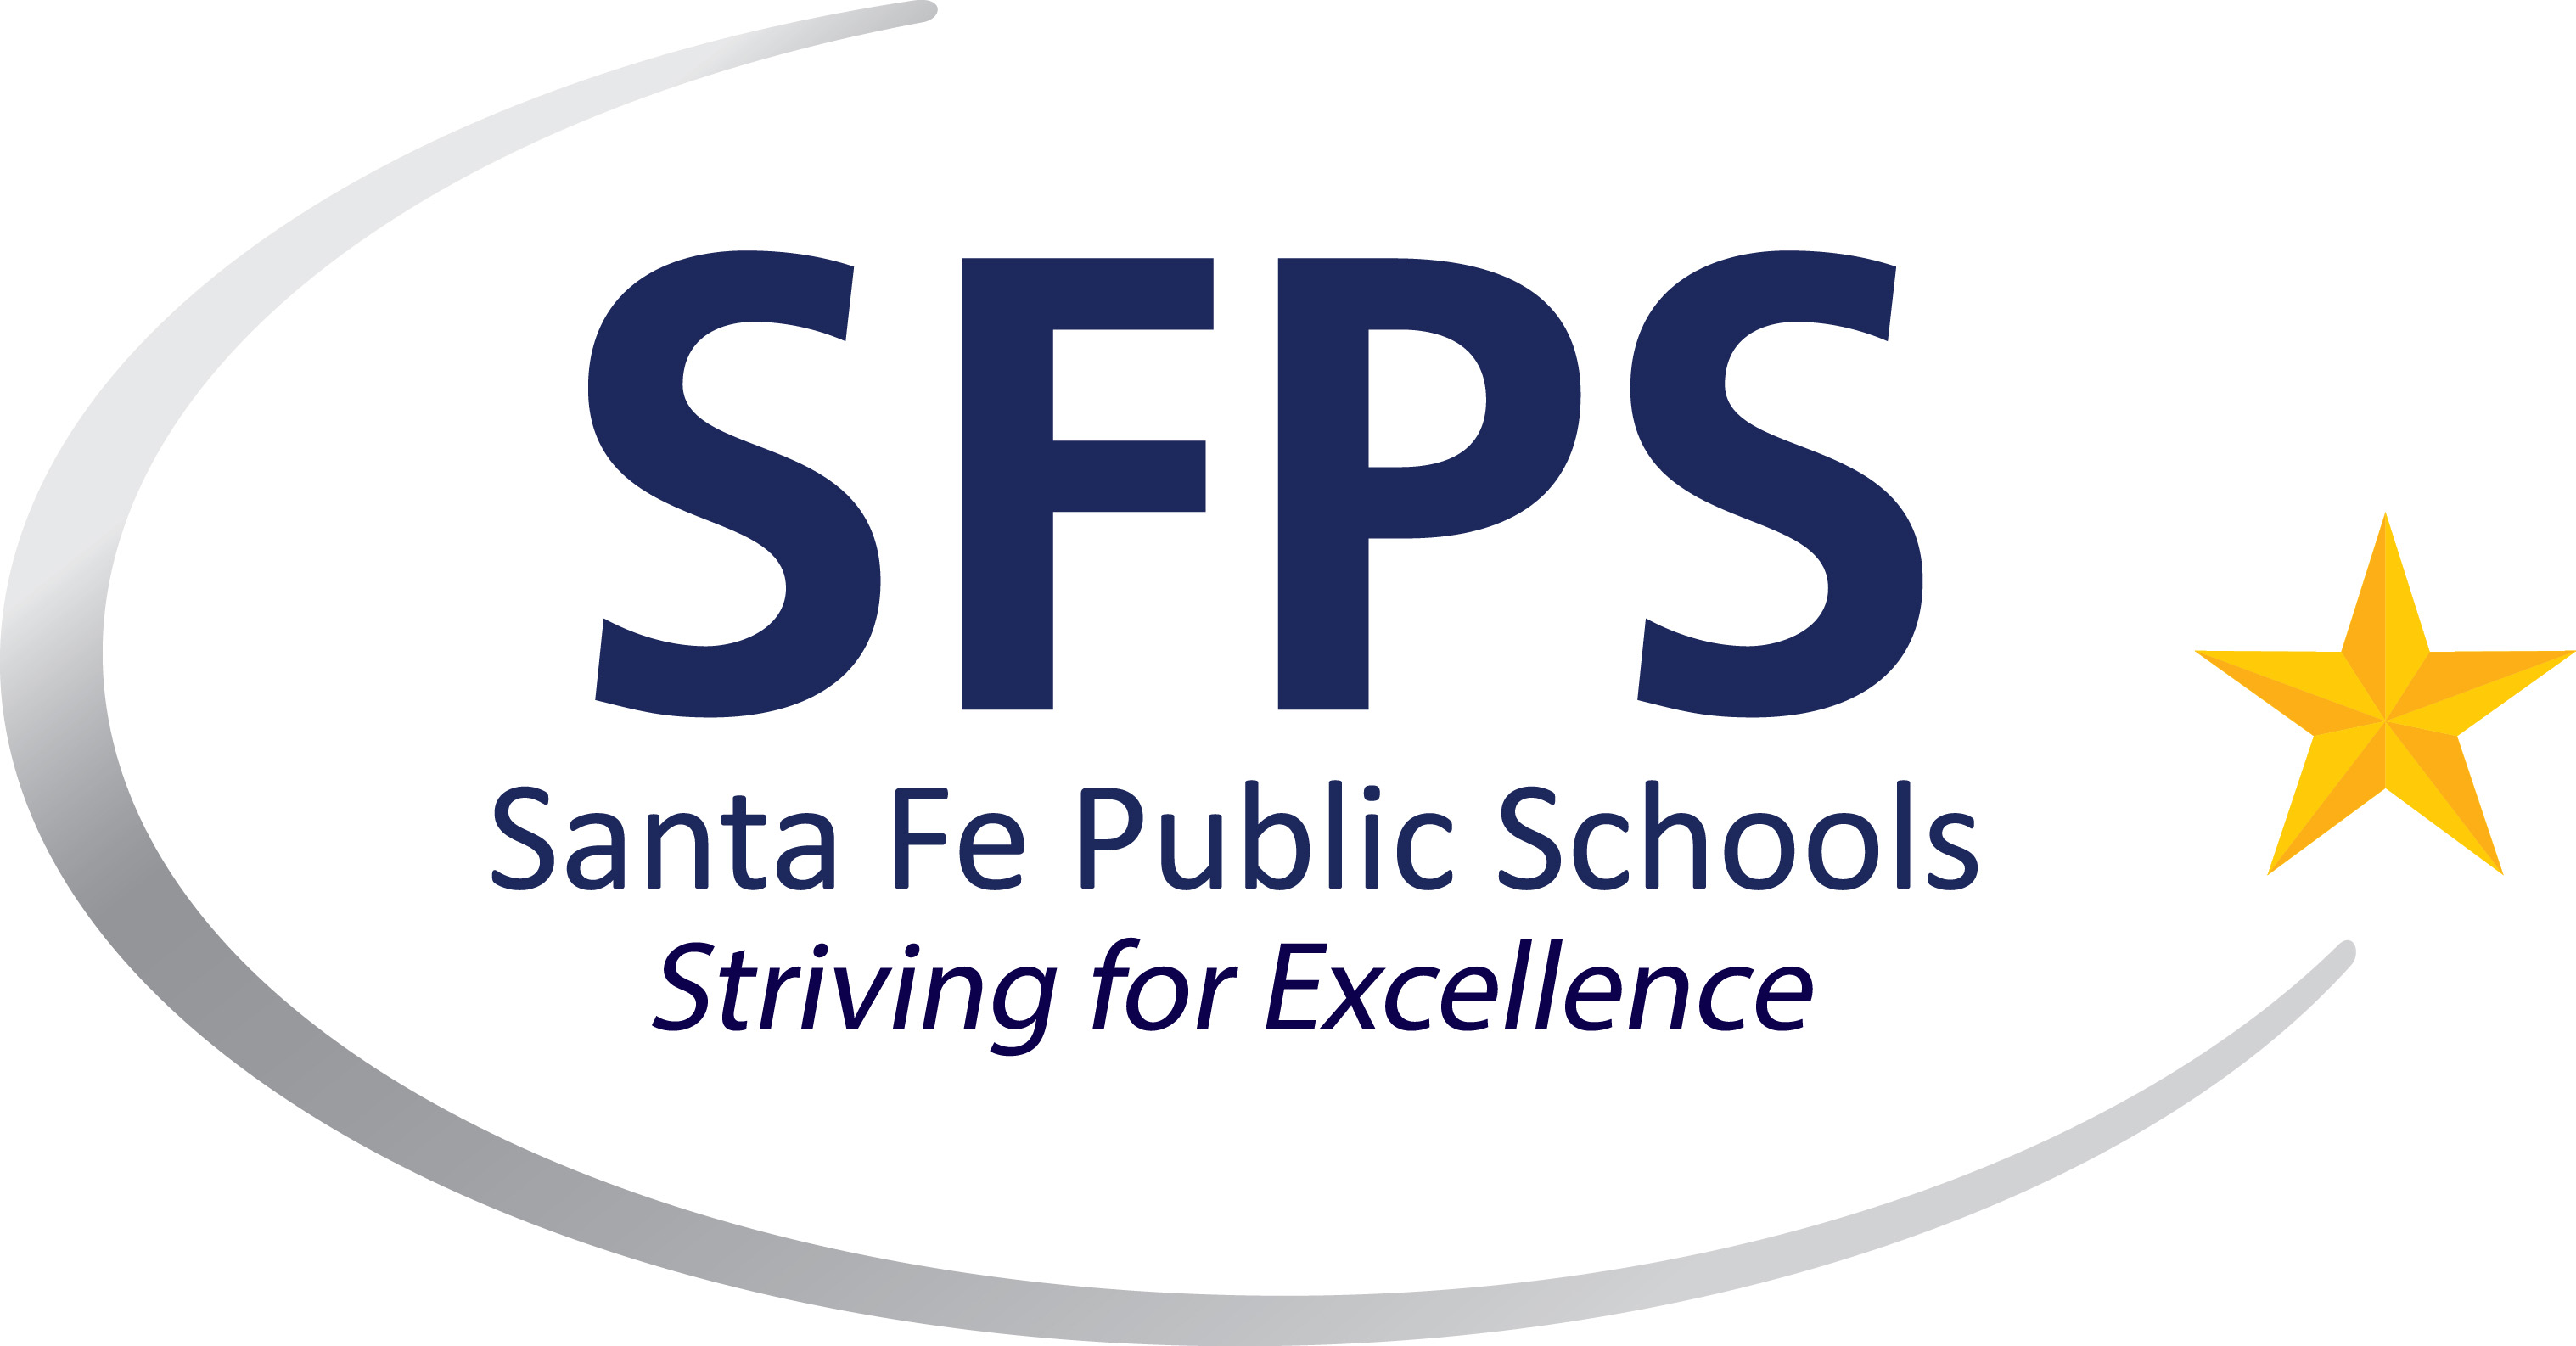 About SFPS Santa Fe Public Schools